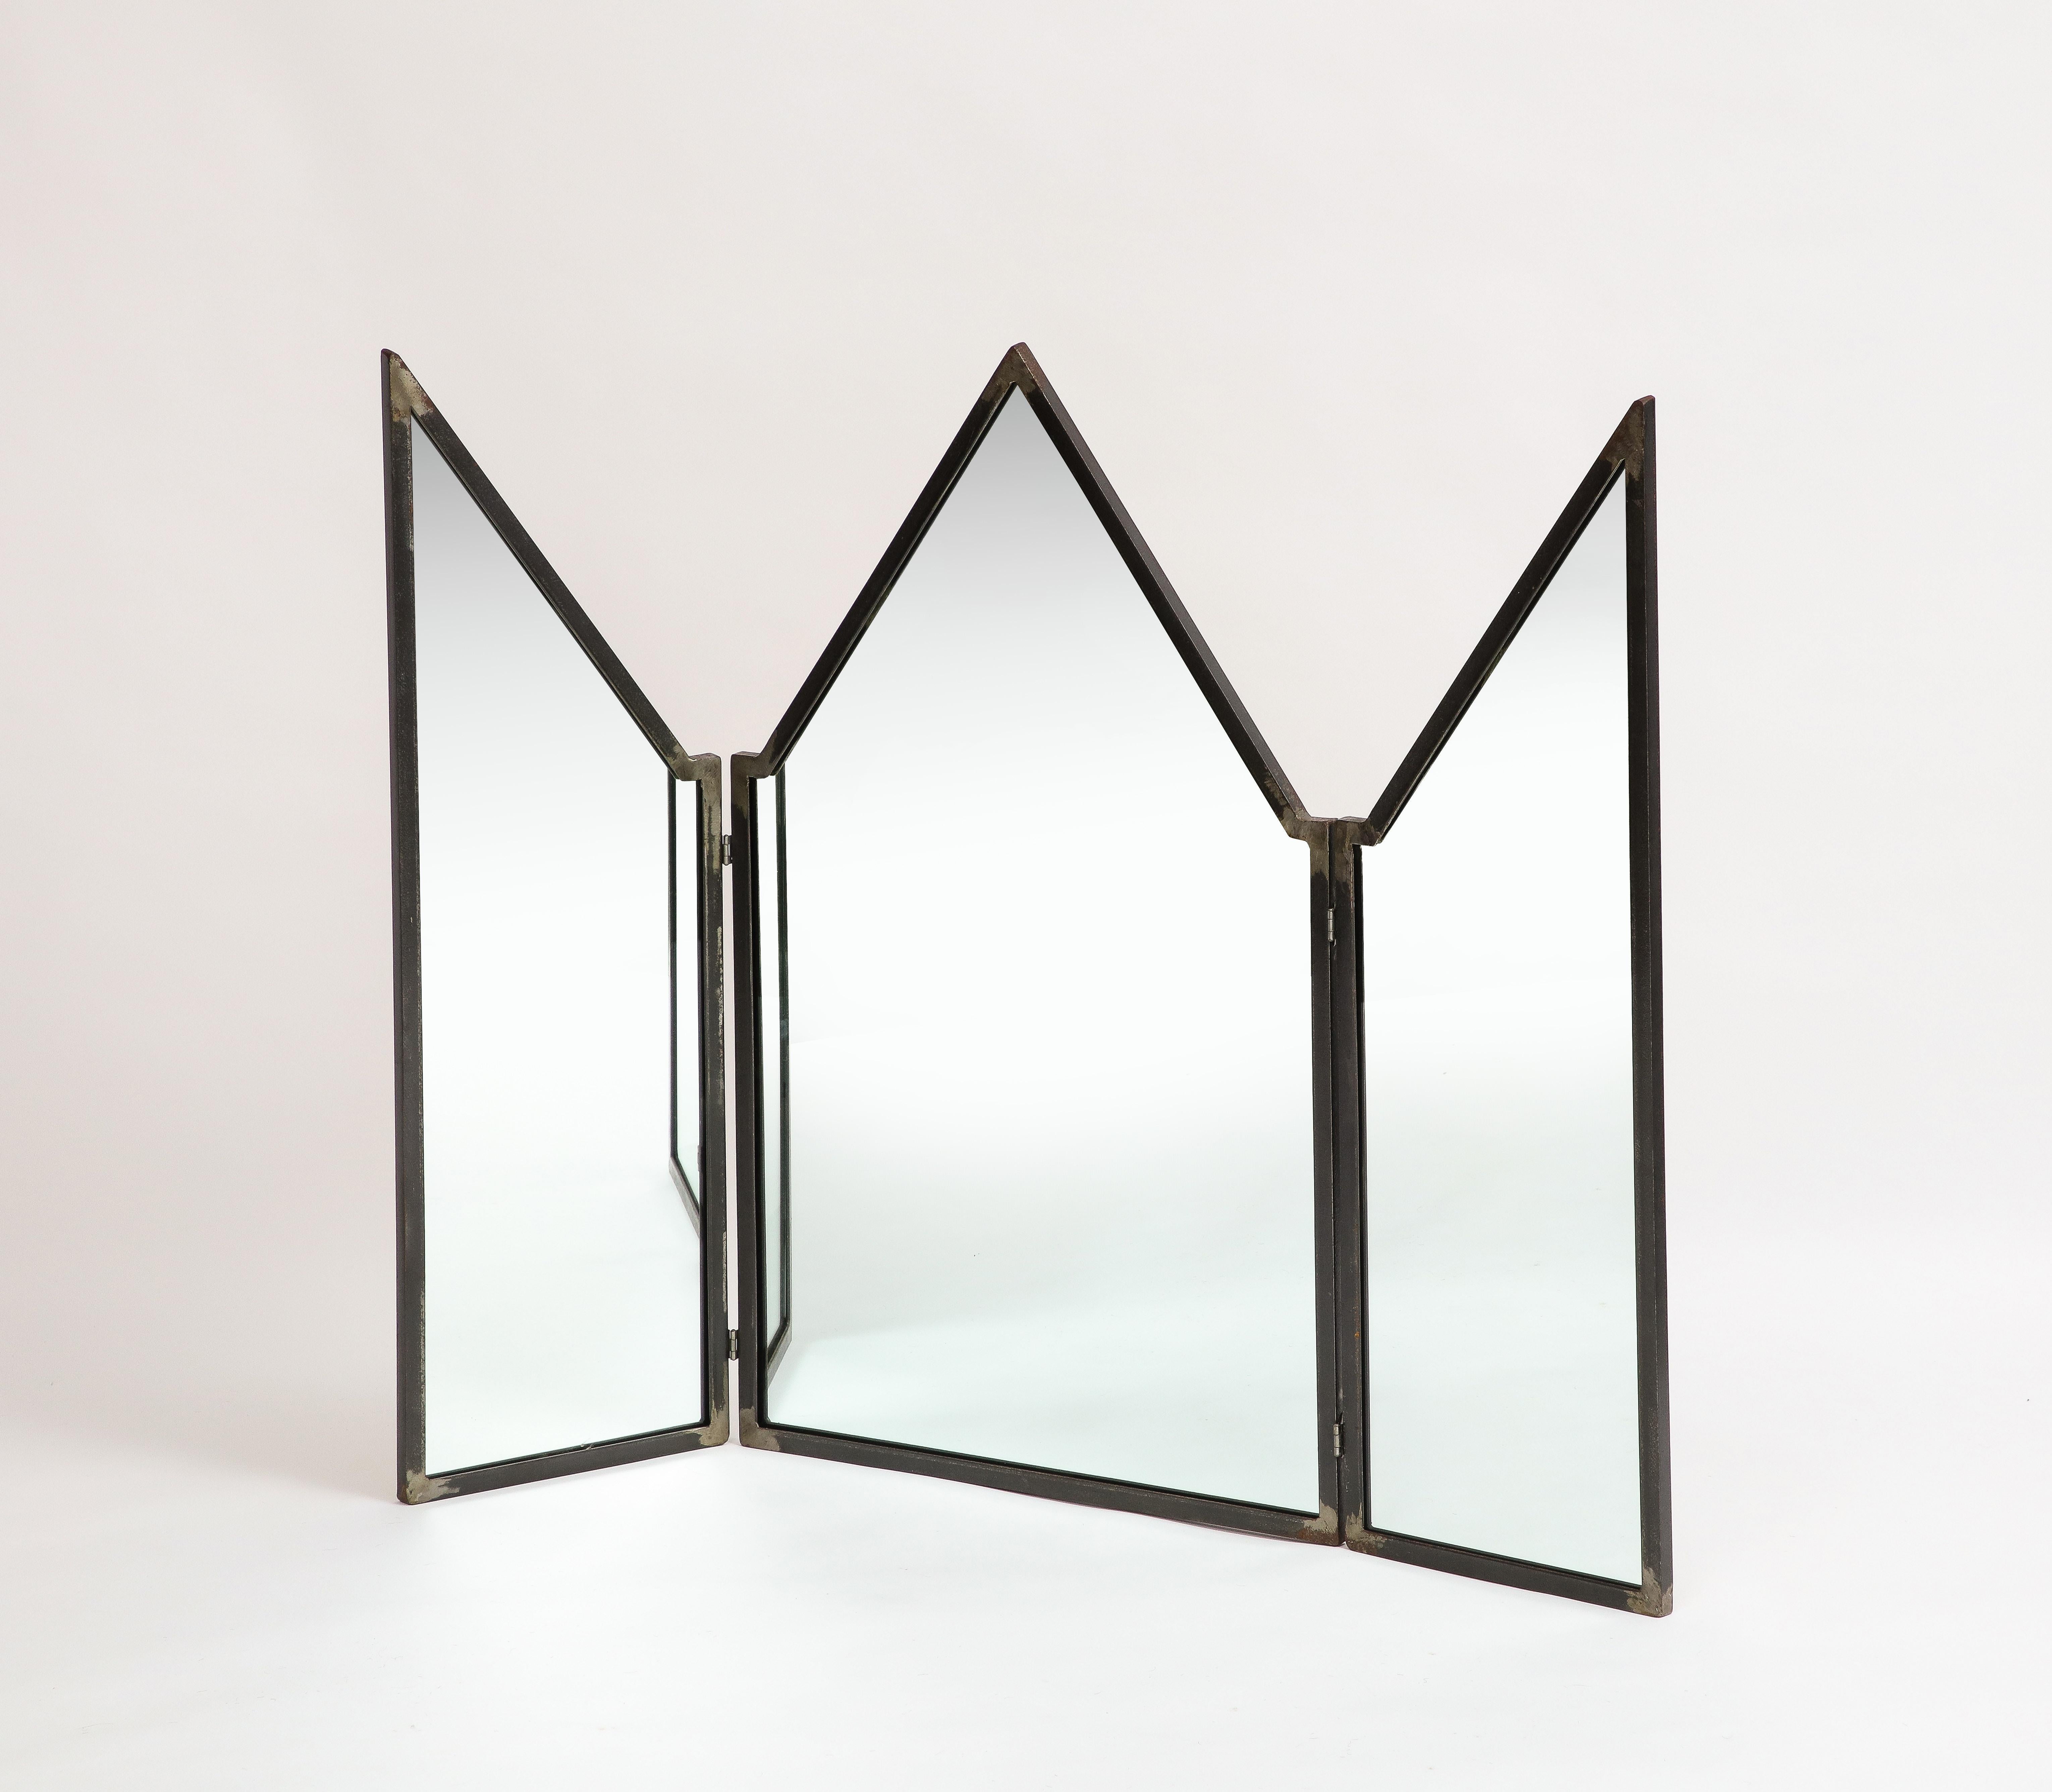 Miroir pliant moderne en fer patiné de Mario Villa (1953-2021), provenant de sa succession. Le miroir est constitué de trois panneaux à fronton avec des sommets en pointe. Le miroir et le support en bois ont été remplacés en 2022. 

Mesures : 39